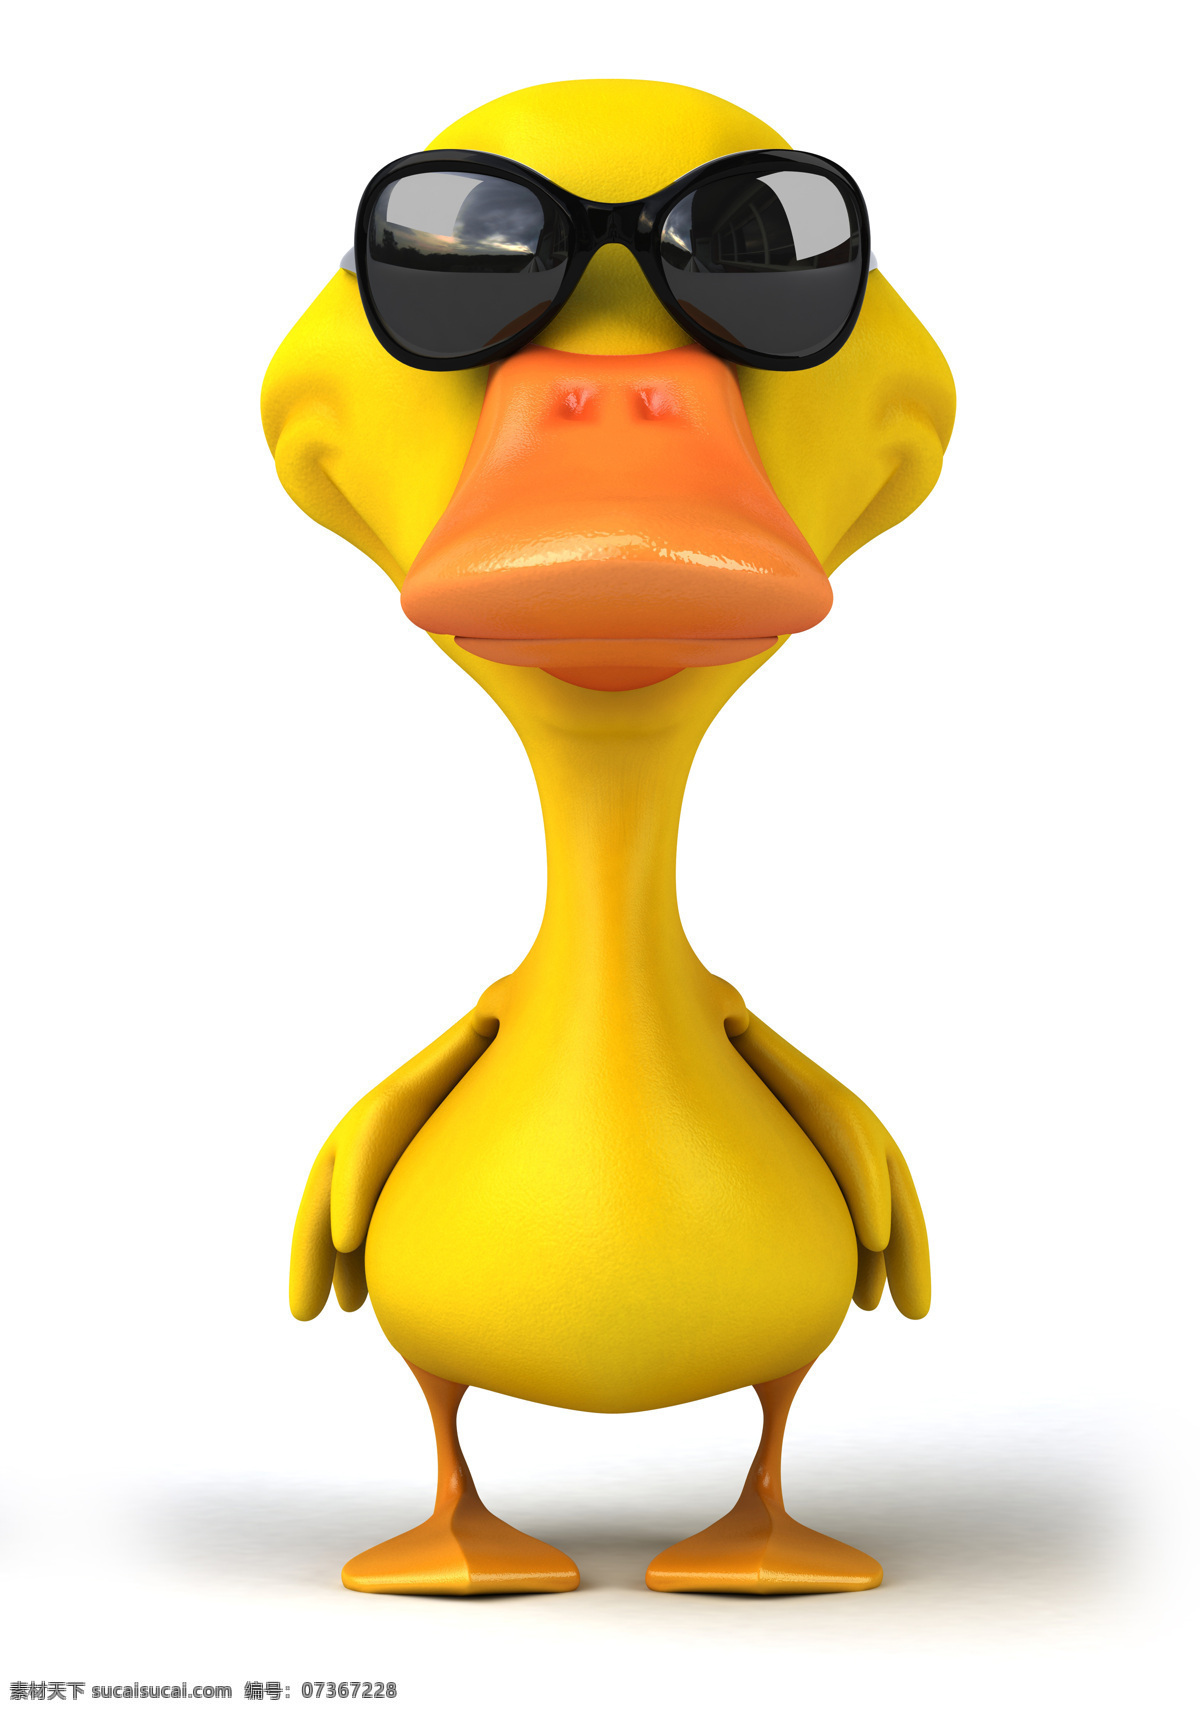 戴 墨镜 小黄 鸭 小黄鸭 3d动物 鸭子 有趣的动物 其他类别 生活百科